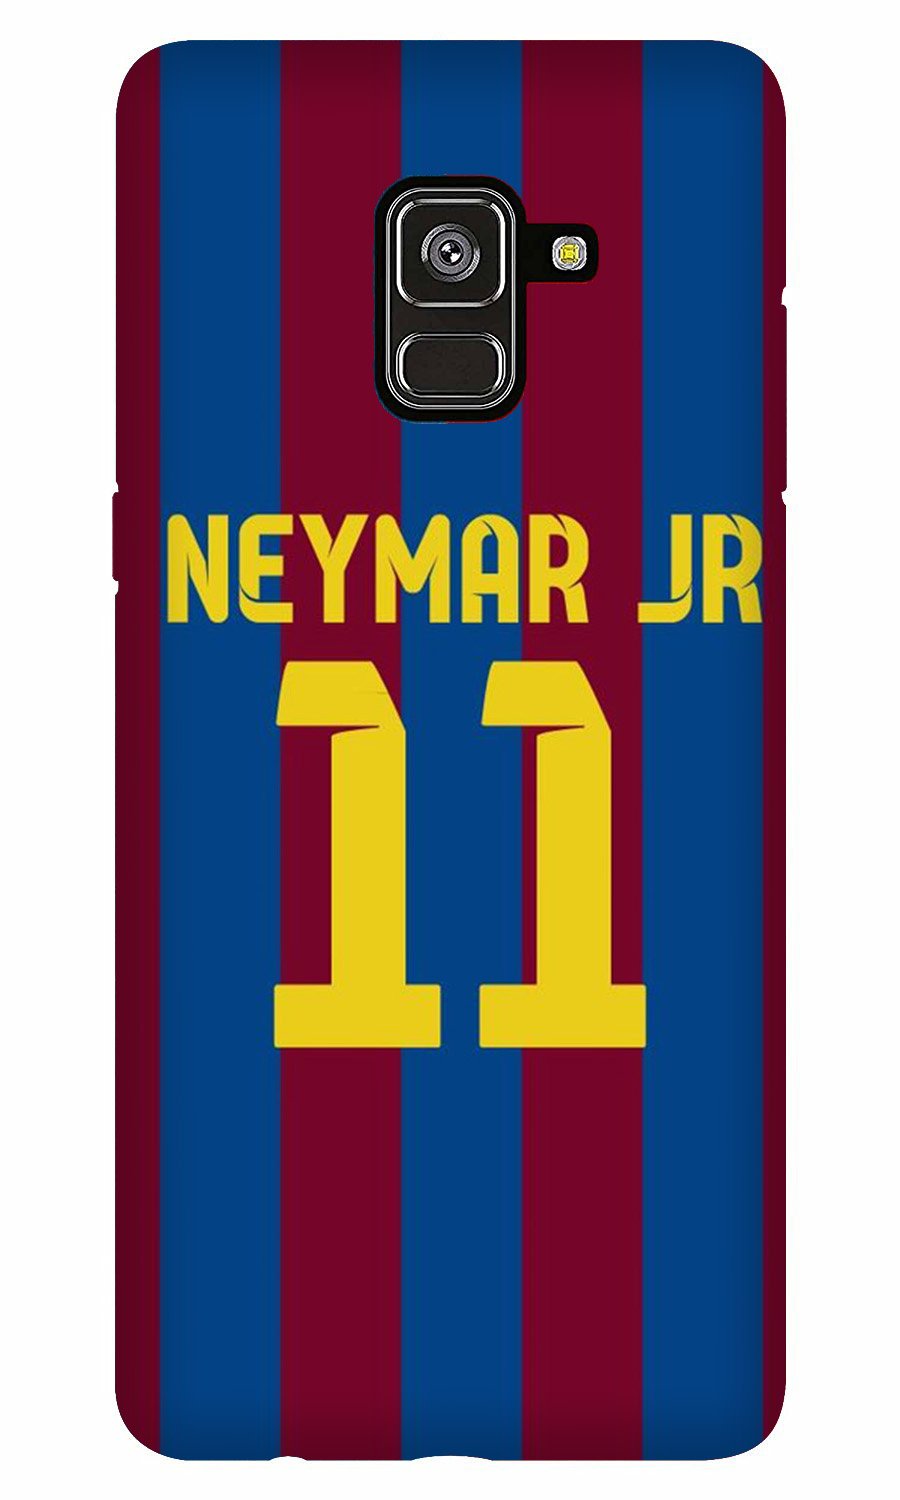 Neymar Jr Case for Galaxy J6/On6  (Design - 162)